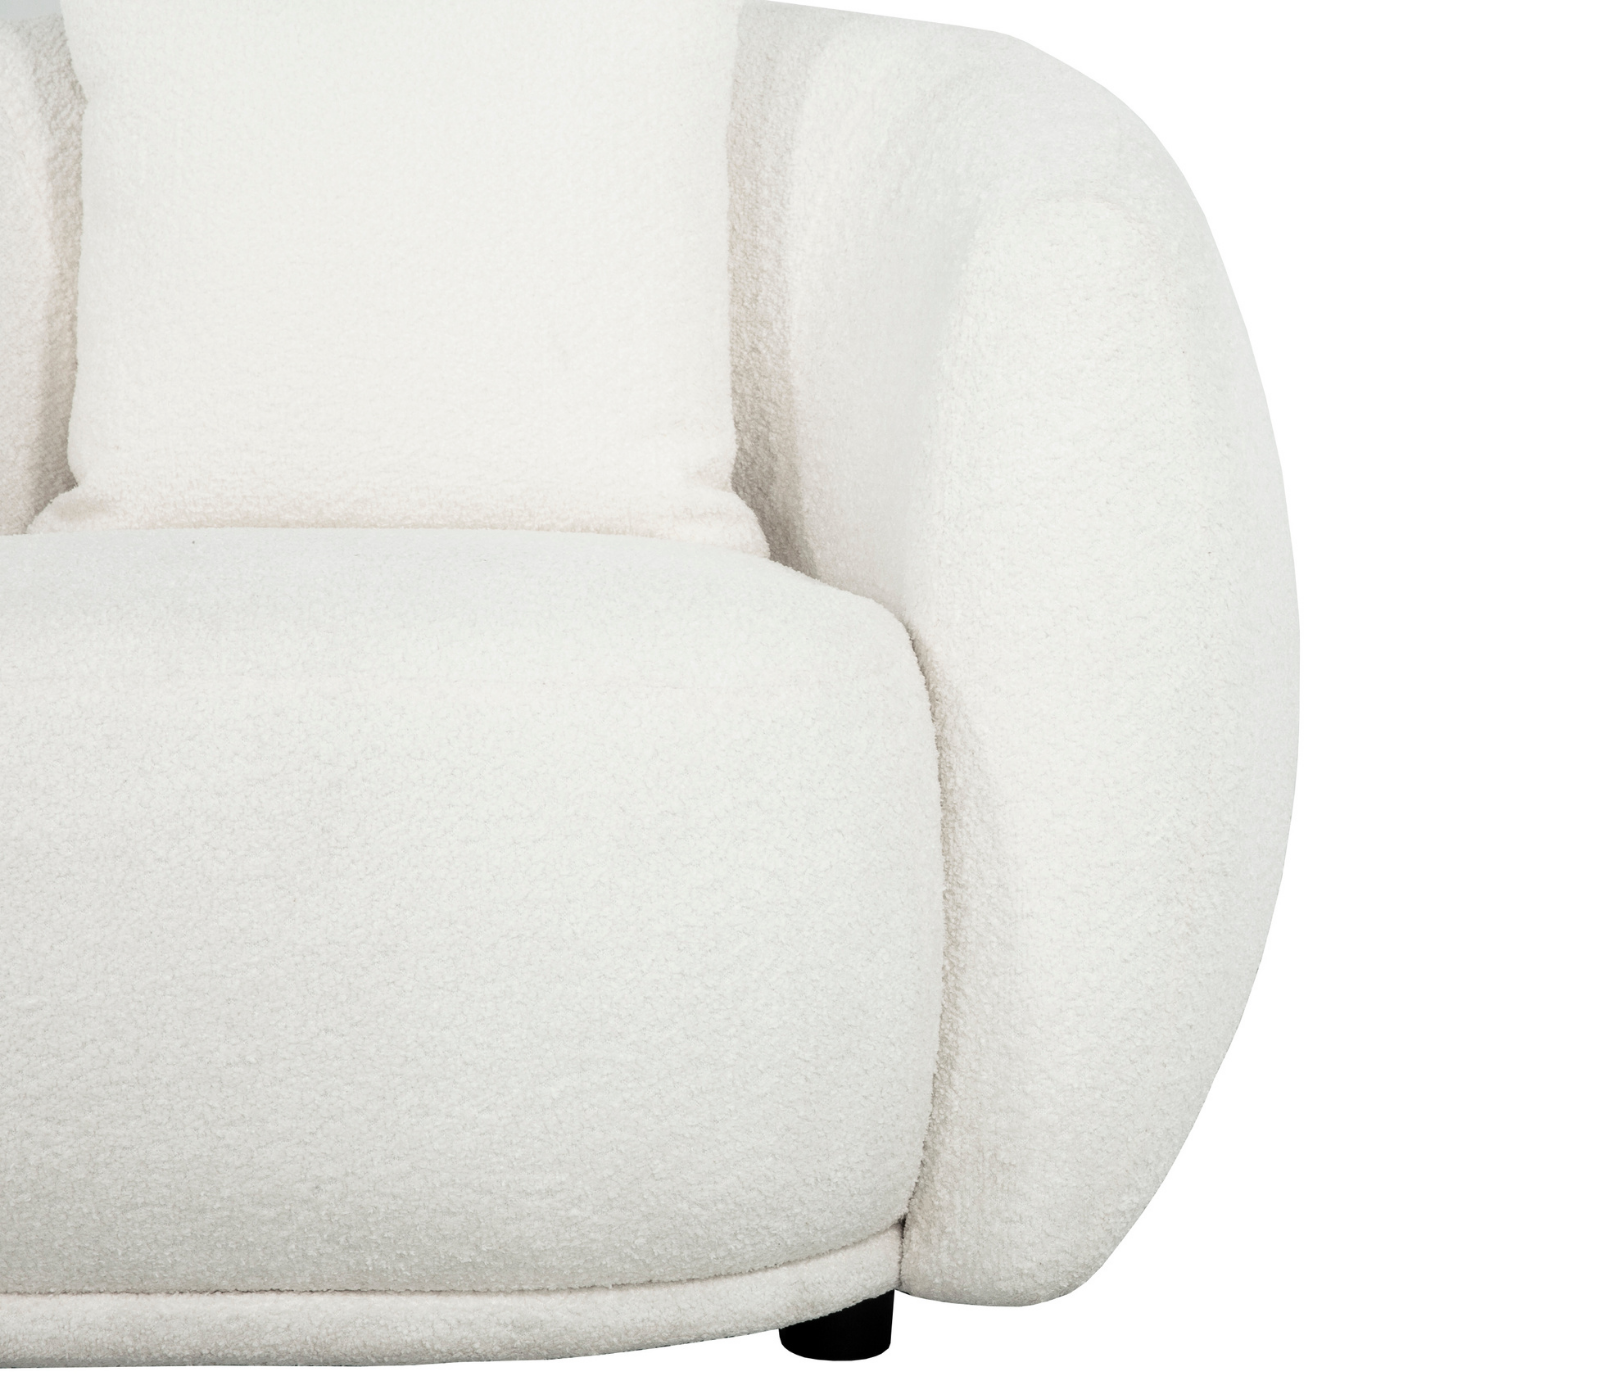 Alba Curve 4 Seater Sofa - Ivory Boucle Fabric